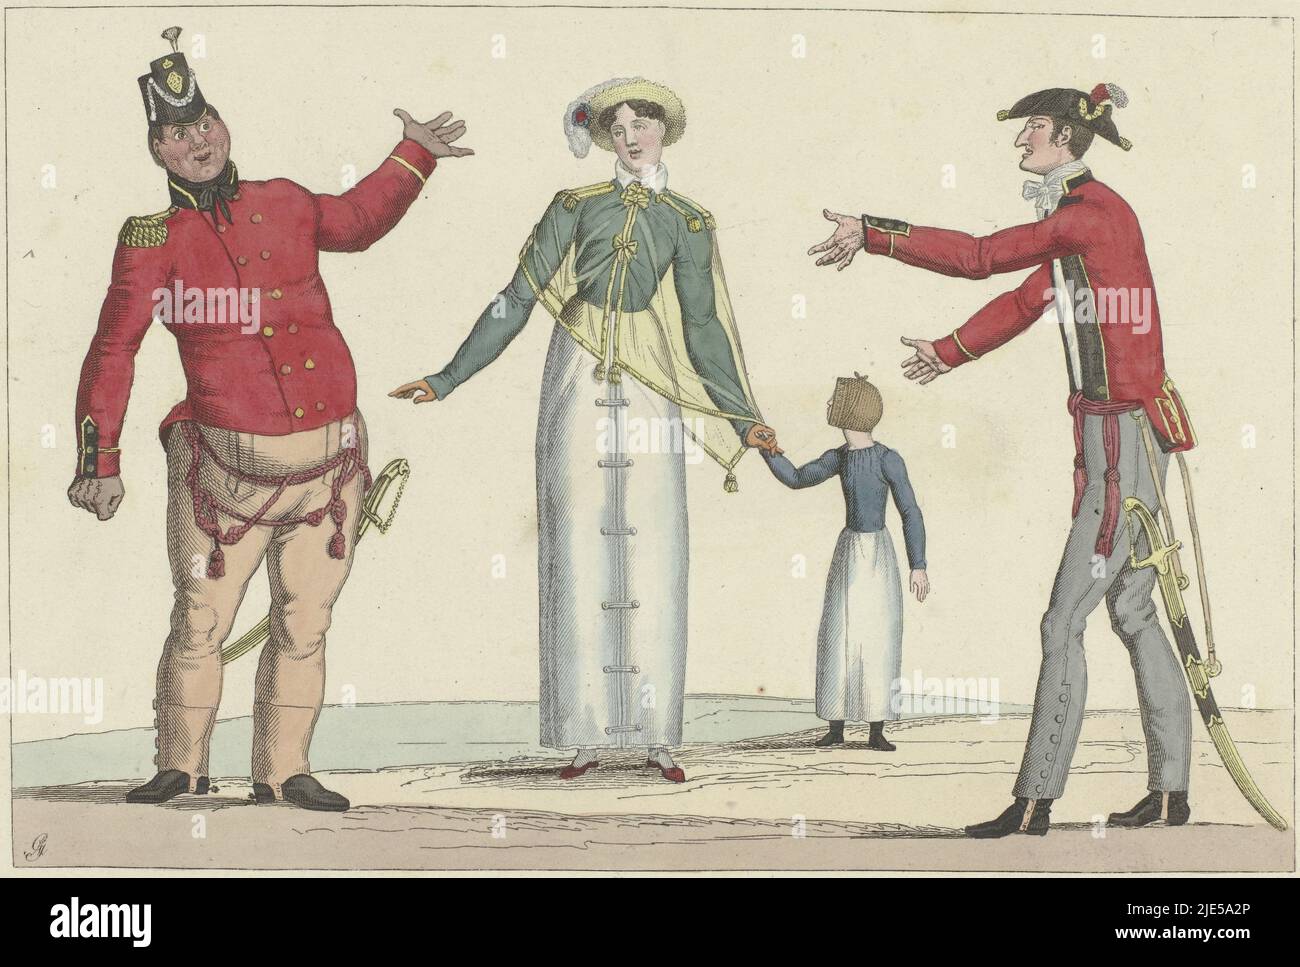 Deux soldats vêtus d'uniformes anglais. Les deux portent une veste uniforme sur un pantalon long. L'homme gras a un shako sur la tête, l'homme mince un point avec une plume d'autruche et à la fin des jupons. Entre eux est une femme avec une fille sur sa main. Elle porte une cape transparente au-dessus d'un spencer. Selon la légende, les Anglais se rencontrent à Paris. Imprimé d'une série de 30 tirages mode, le Supêche bon ton, Paris, 1800-1815, No. 23: Rencontre d'anglais à Paris., imprimeur: Anonyme, éditeur: Aaron Martinet, (mentionné sur l'objet), imprimeur: France, Editeur: Paris, 1800 - 1815, papier Banque D'Images